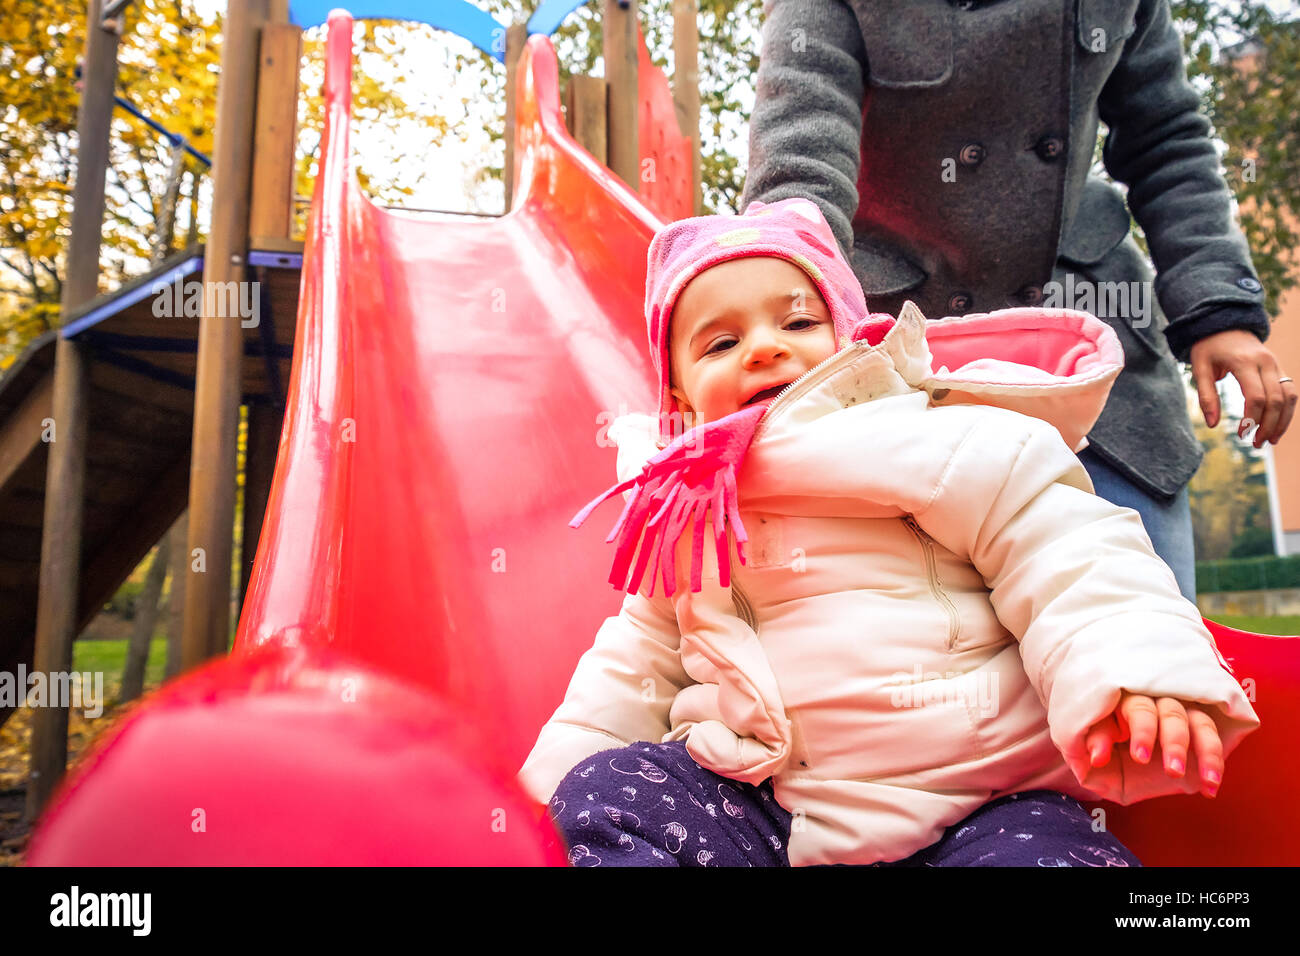 children slide park outdoor playground winter recreation Stock Photo